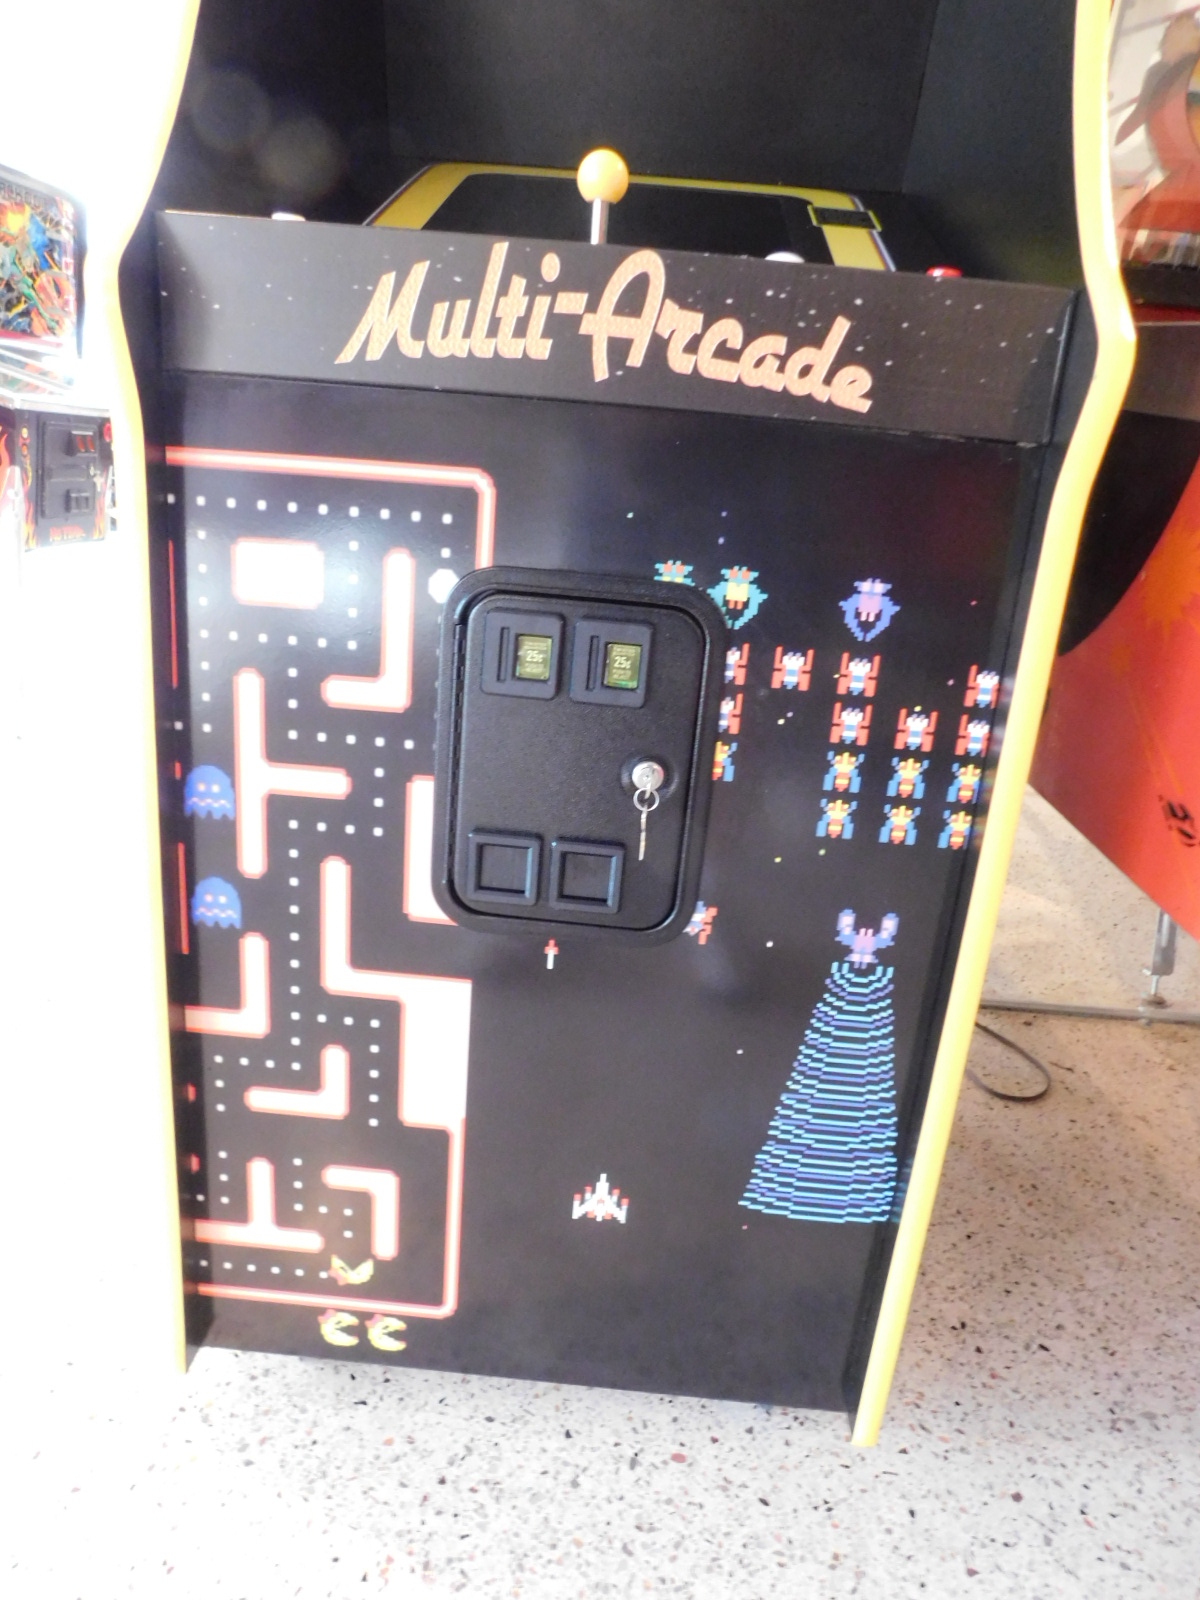 60 in 1 Multi-Arcade Game